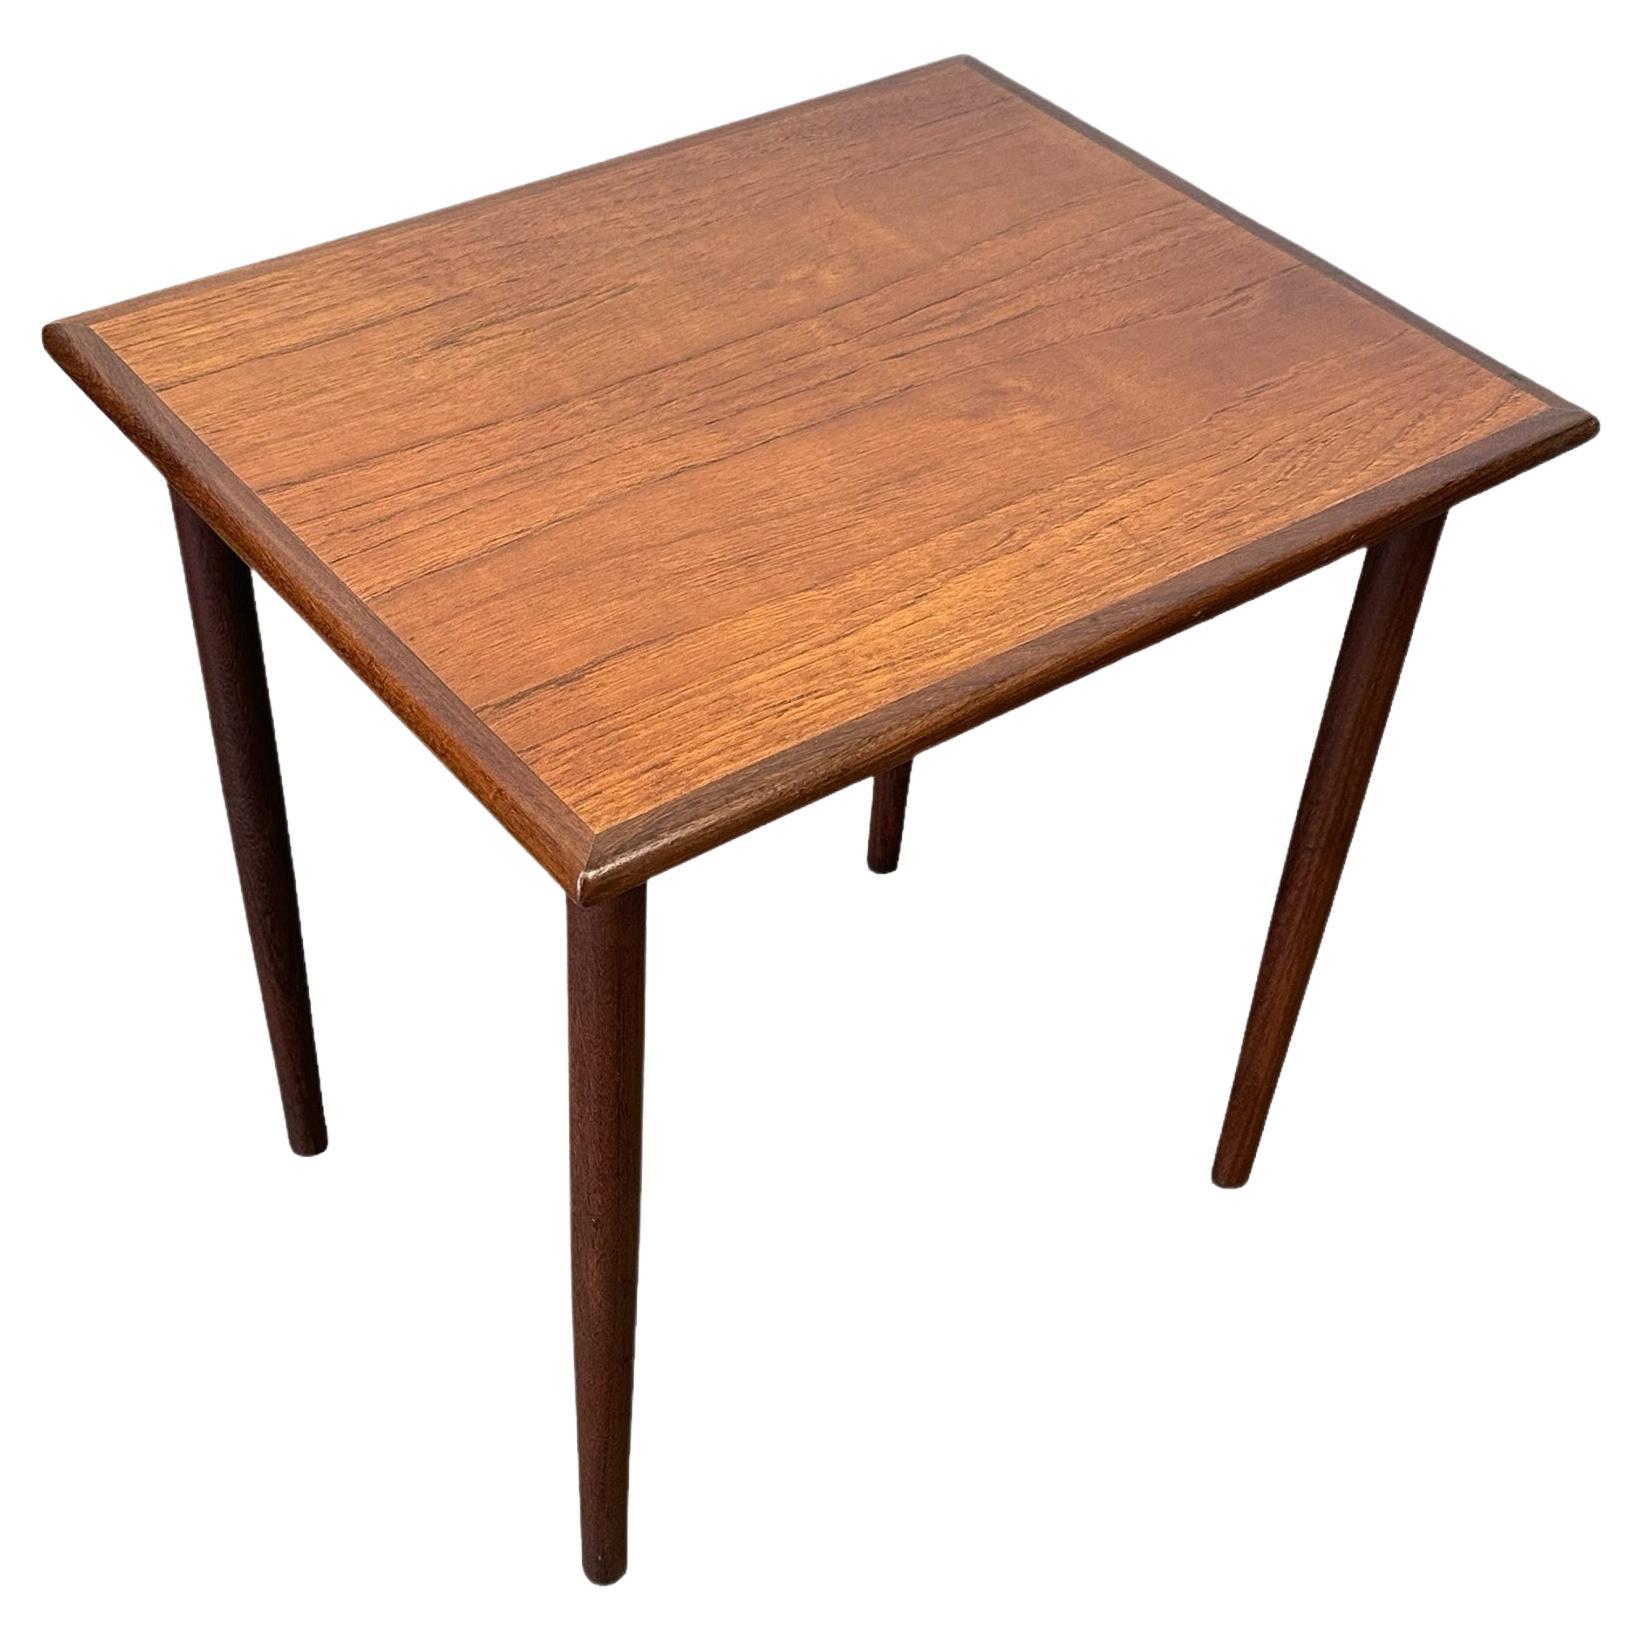 Restored Danish Teak Rectangular Side Table